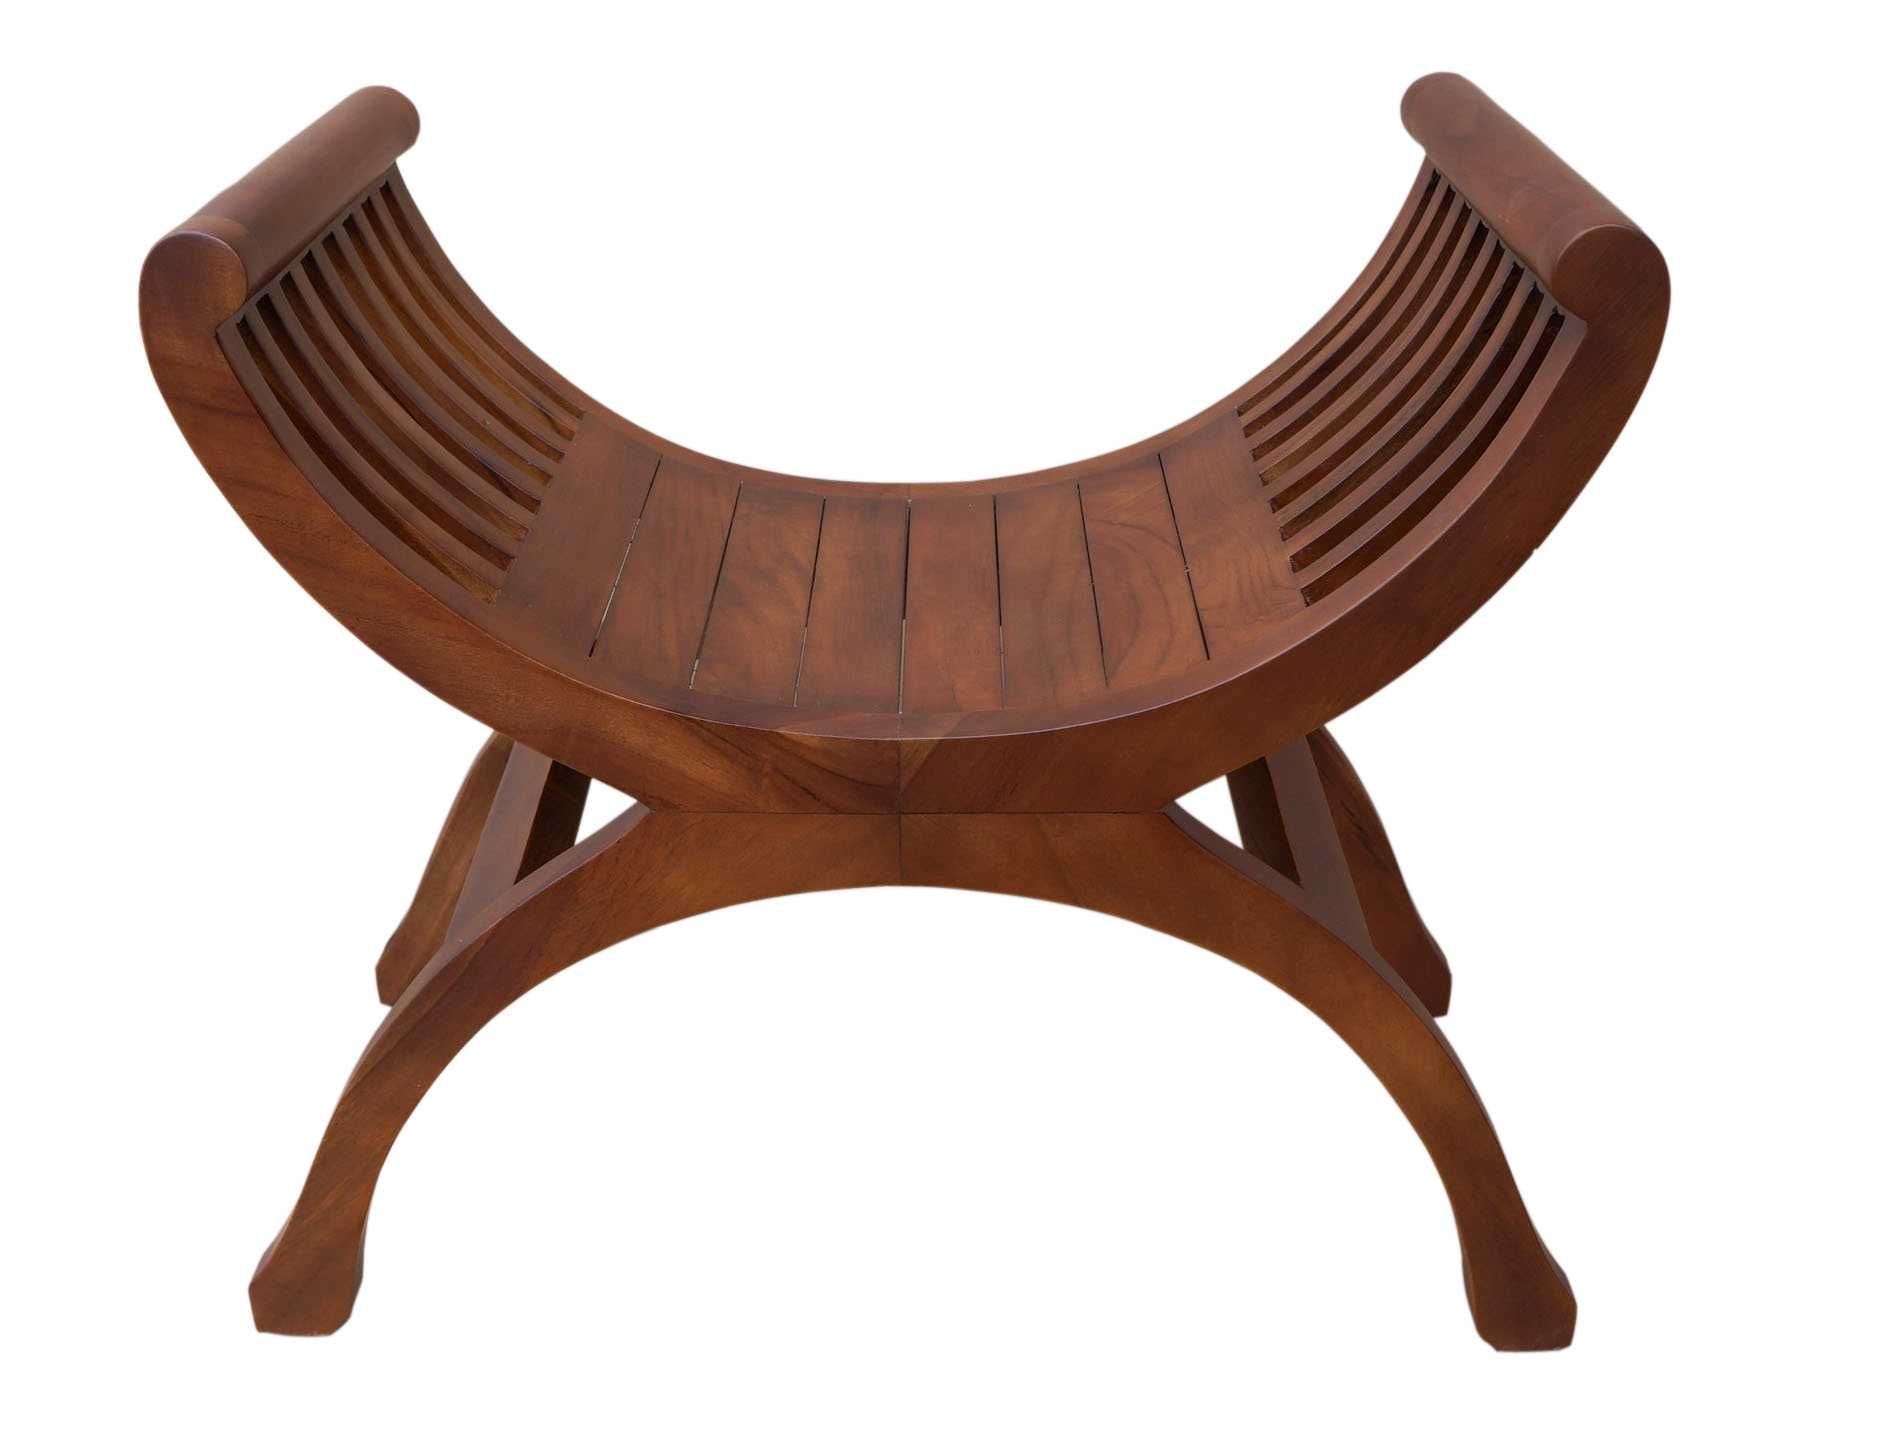 Orientalna ławka teak siedzisko krzesło rzymskie